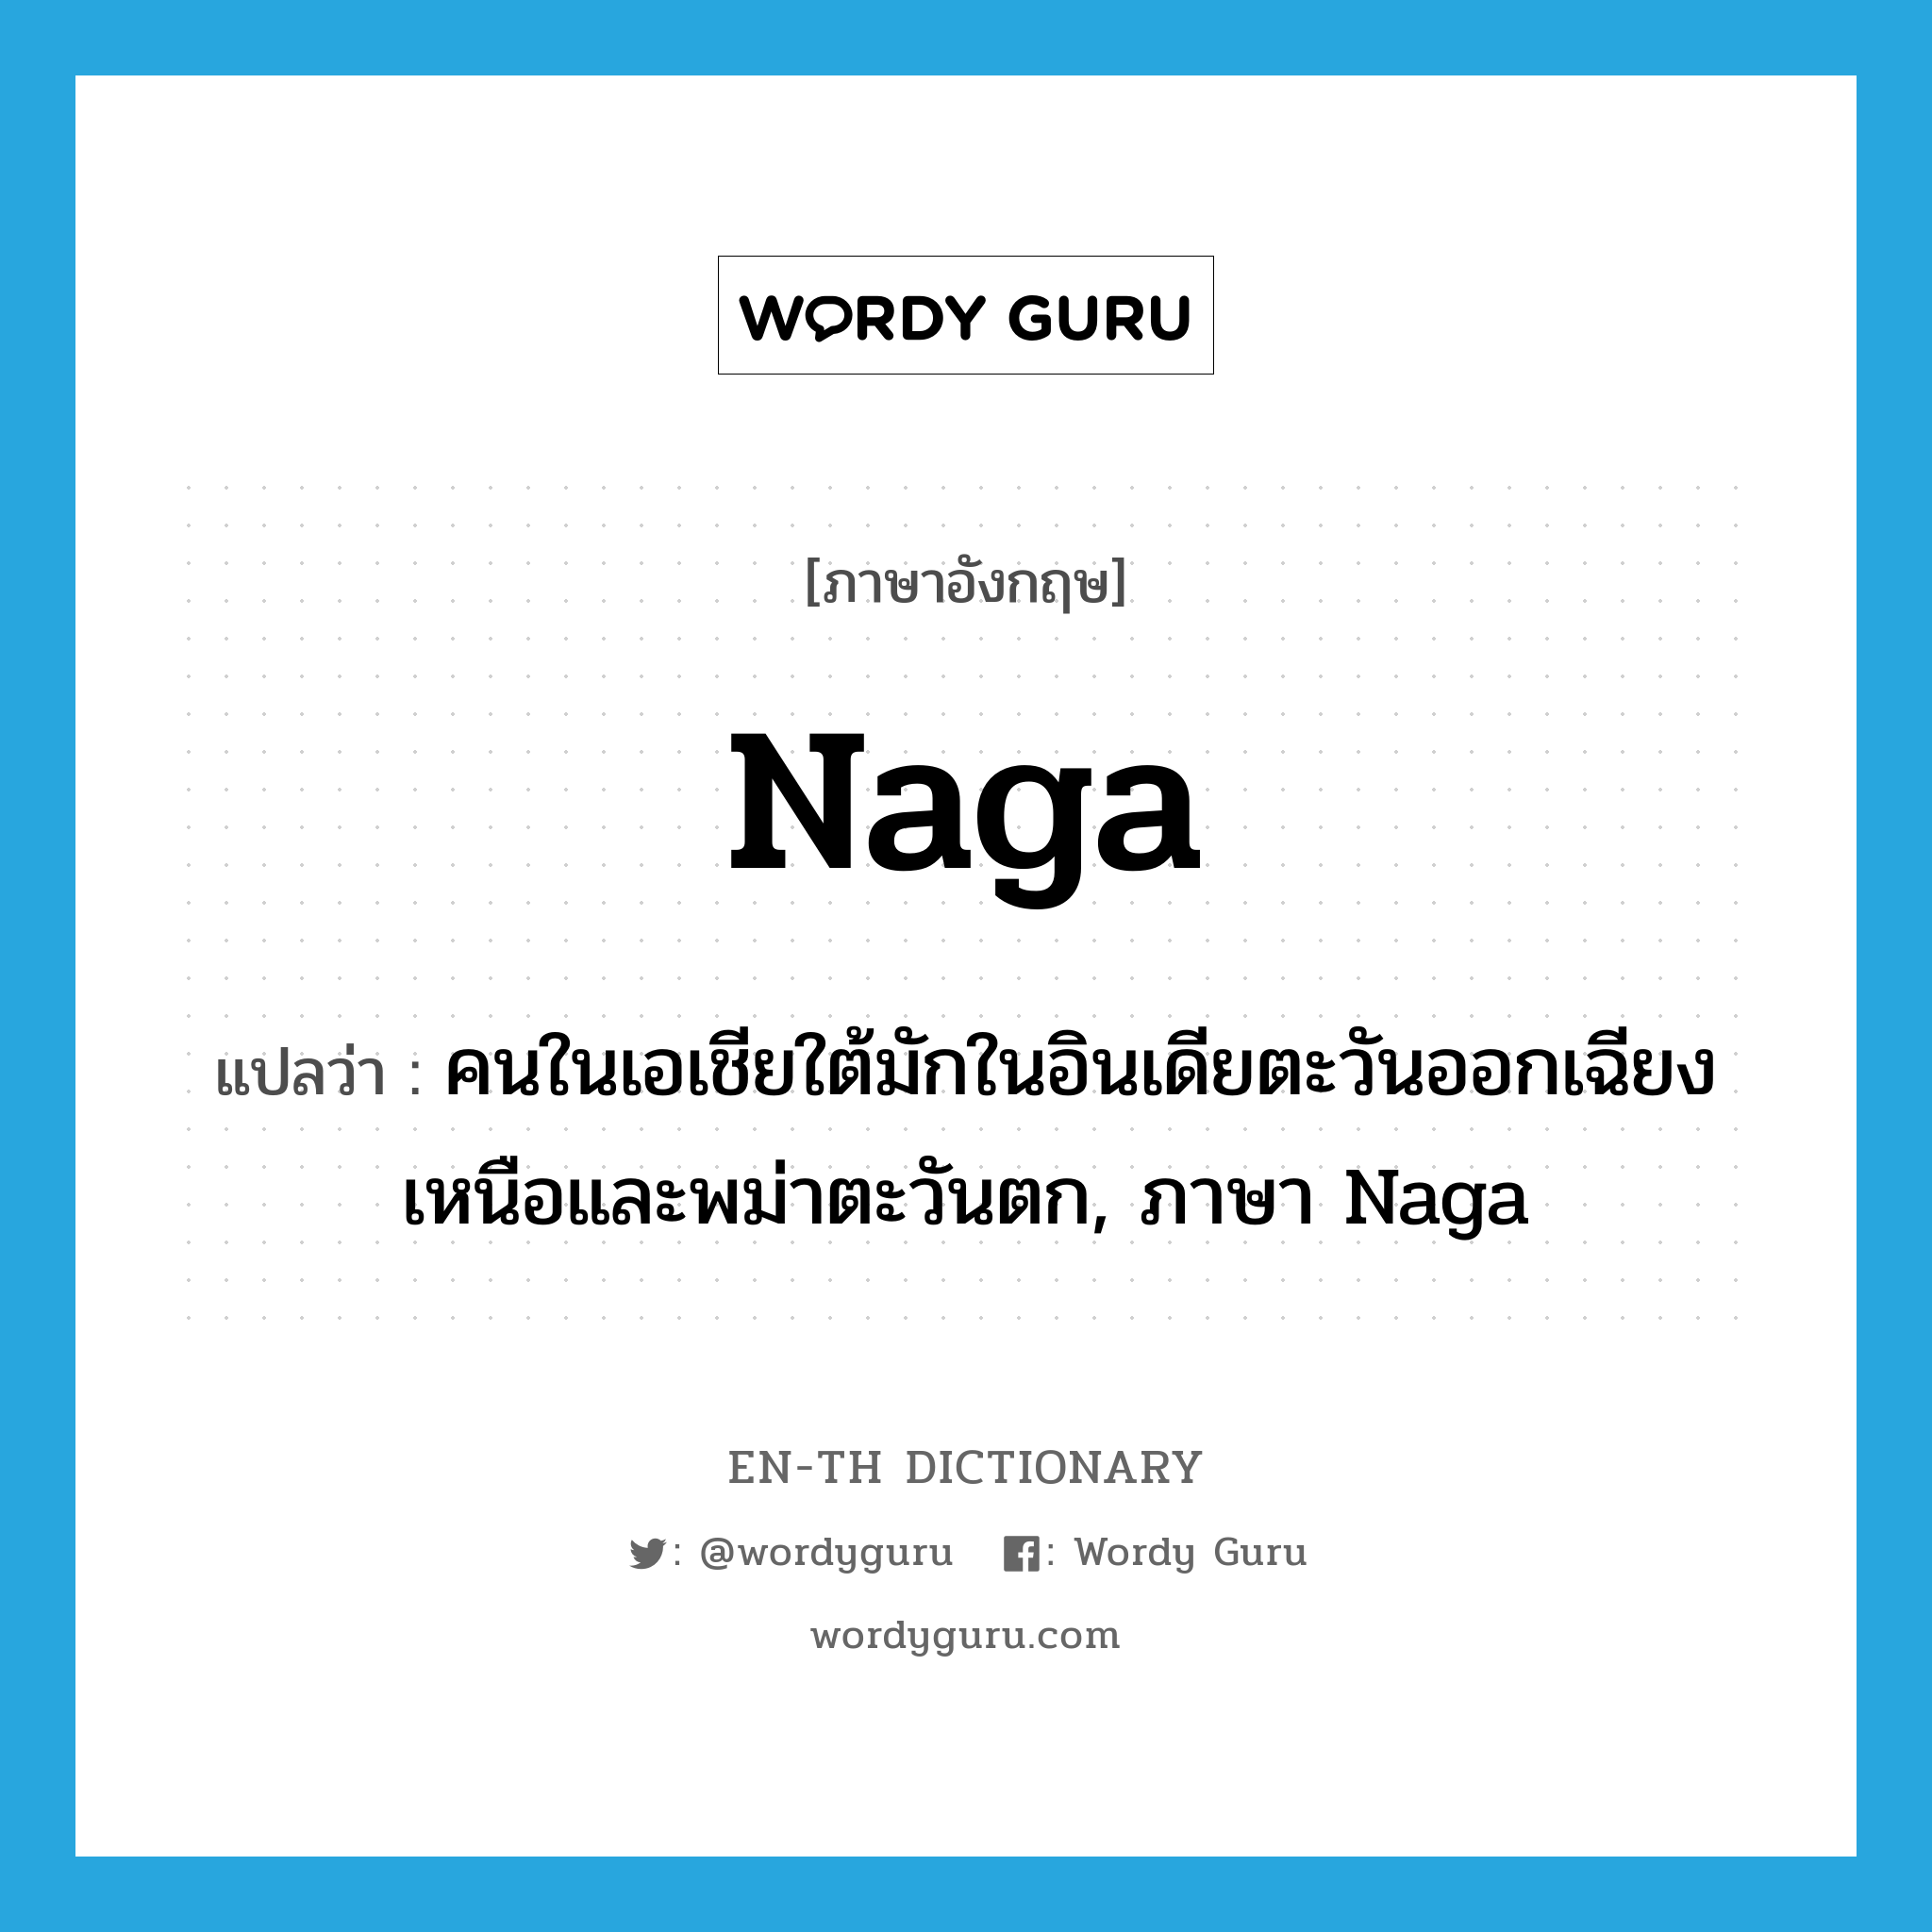 Naga แปลว่า?, คำศัพท์ภาษาอังกฤษ Naga แปลว่า คนในเอเชียใต้มักในอินเดียตะวันออกเฉียงเหนือและพม่าตะวันตก, ภาษา Naga ประเภท N หมวด N